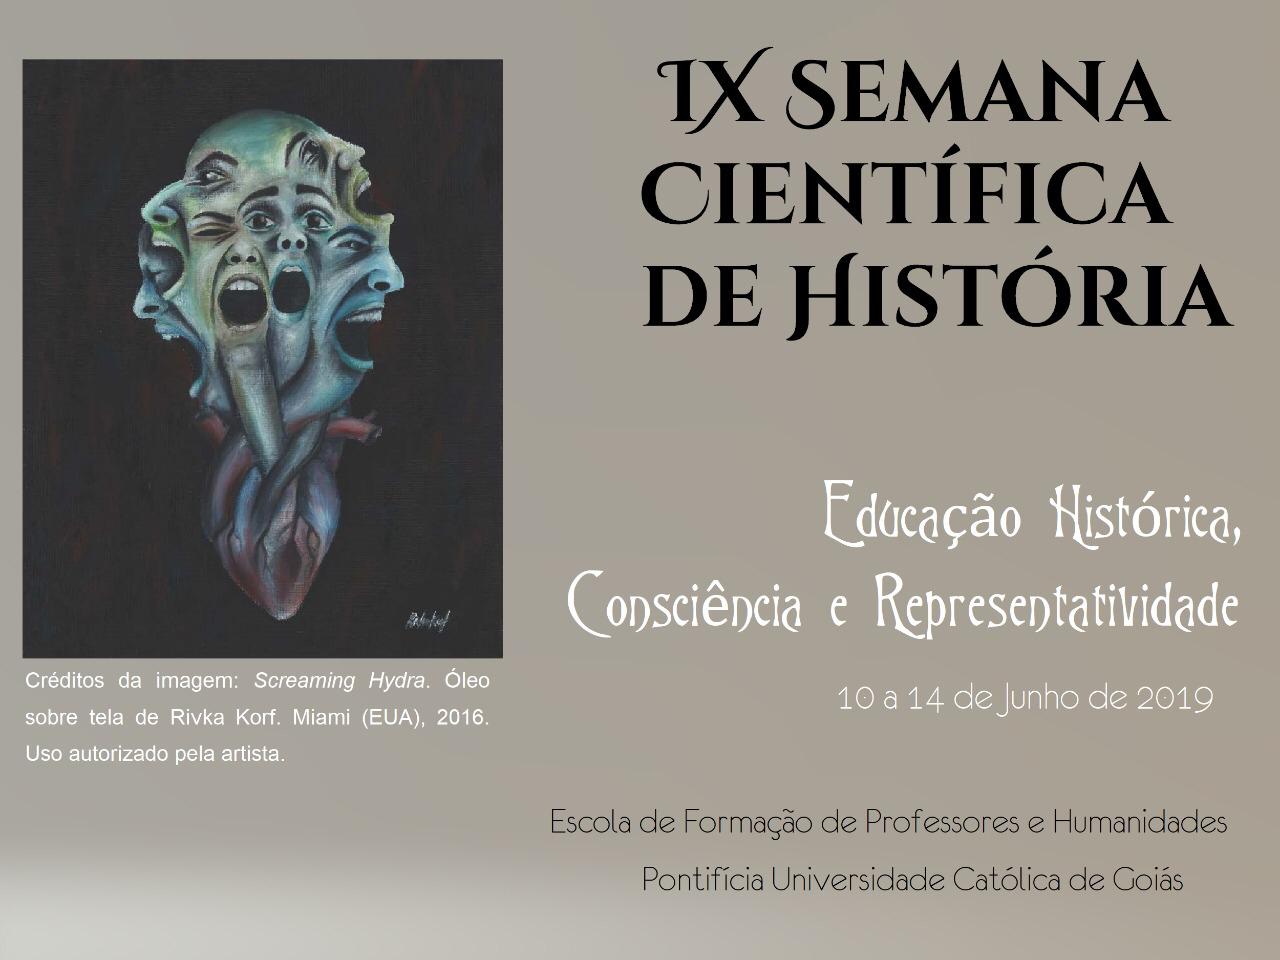 11.06.2019 IX Semana Cientifica de Historia